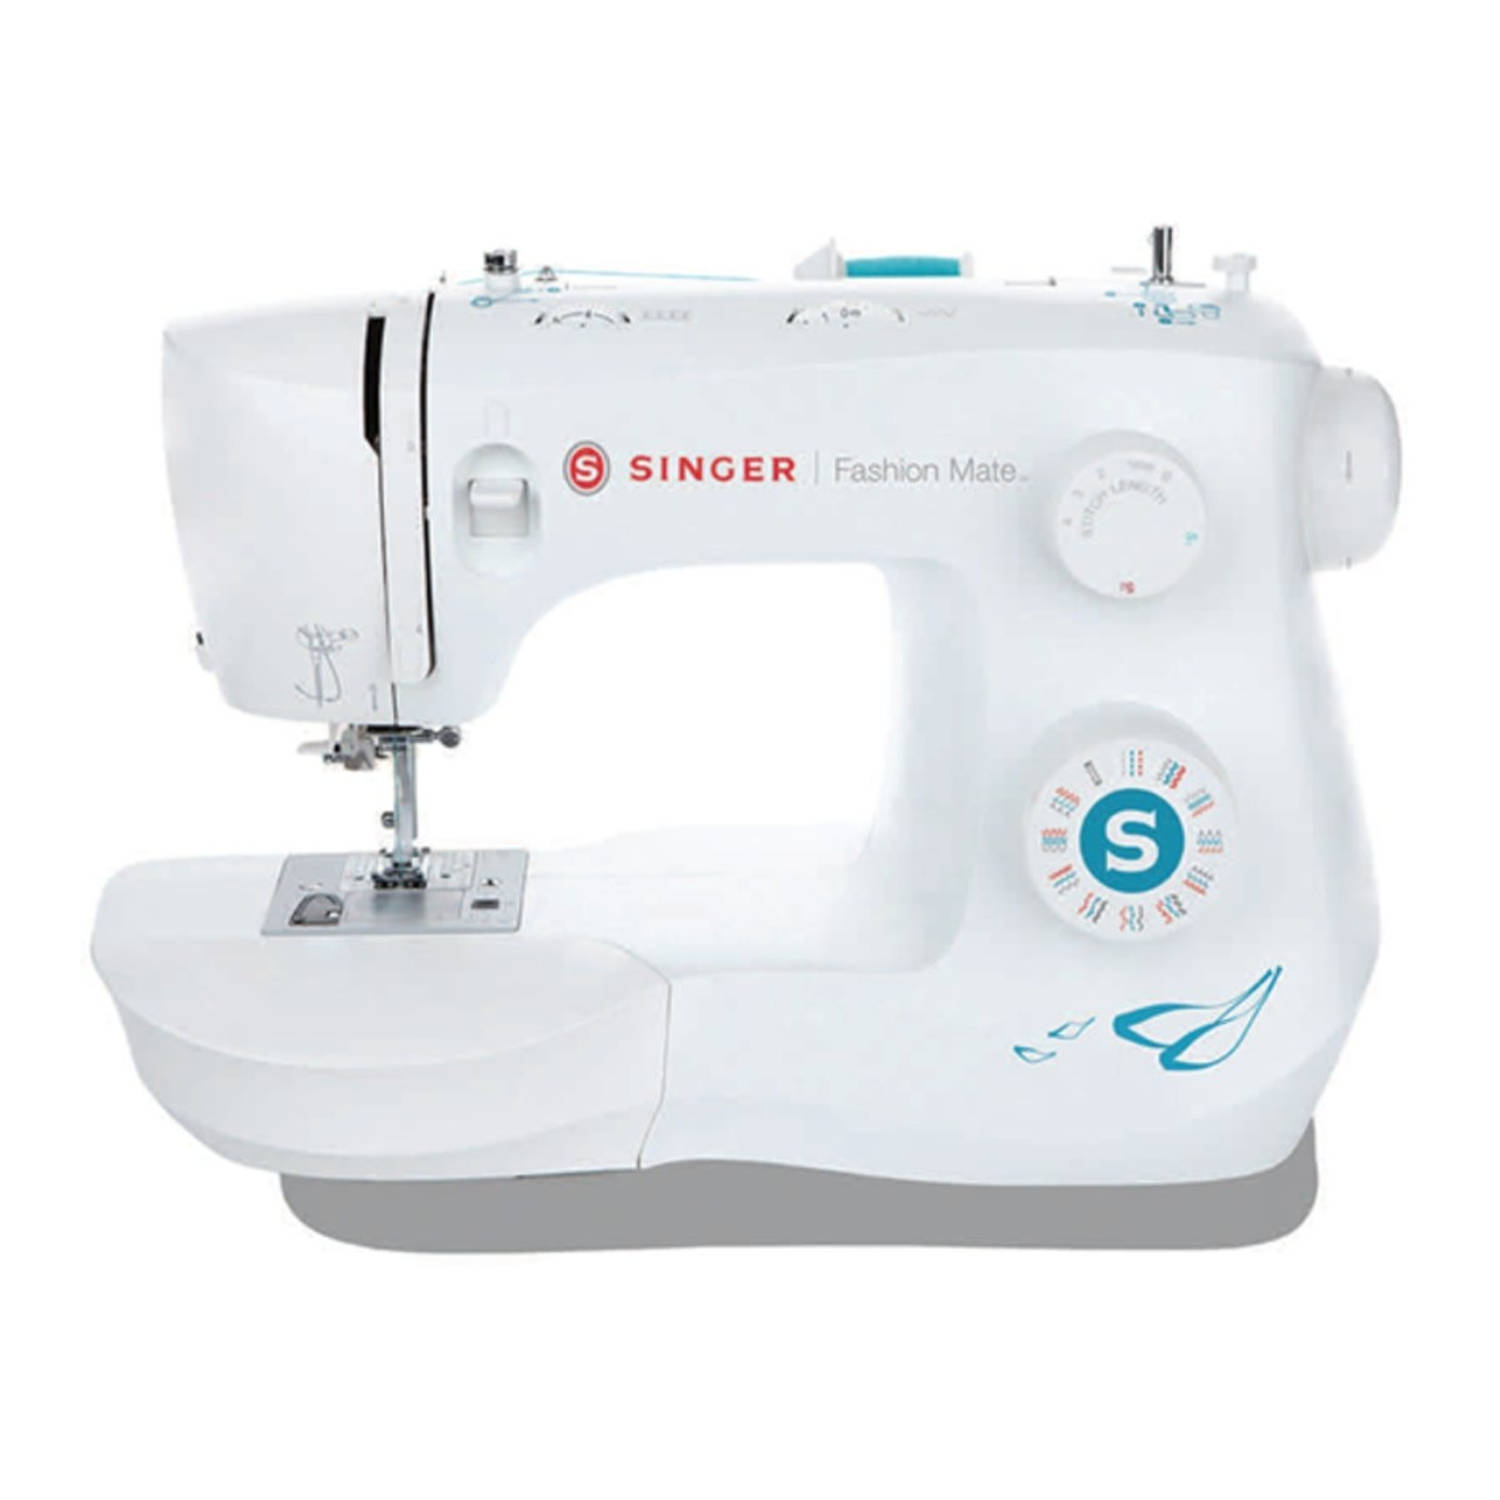 Singer - Fashio Mate Model 3337 - Sewing Machine